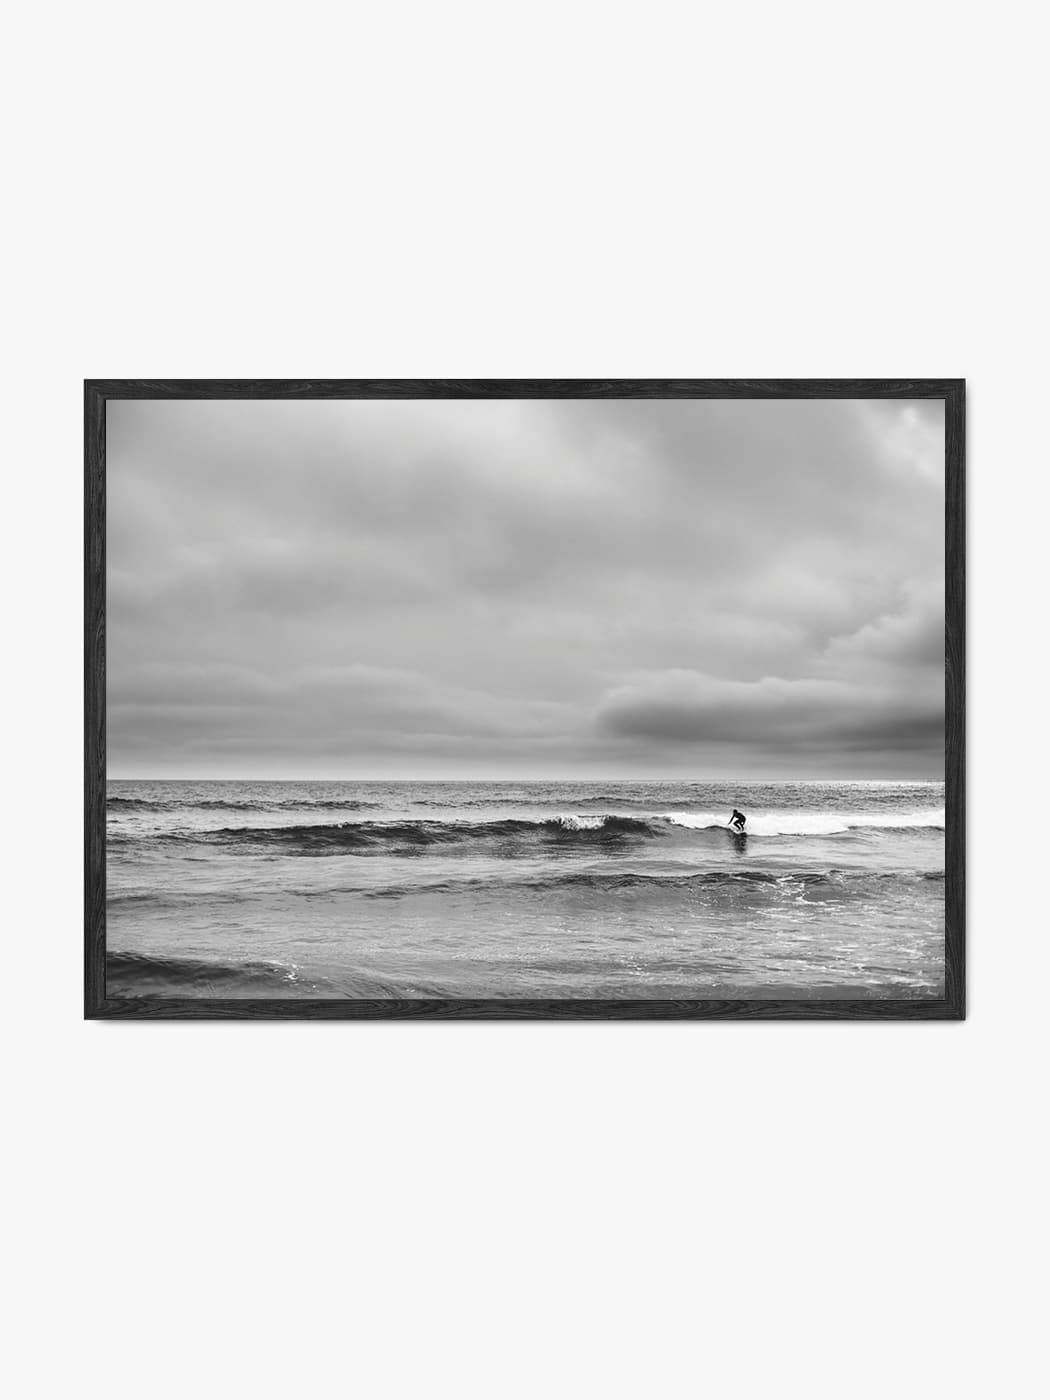 Obraz akustyczny ze zdjęcia - Surfer na wzburzonych falach morza tuż przed sztormem - Łukasz Popielarczyk